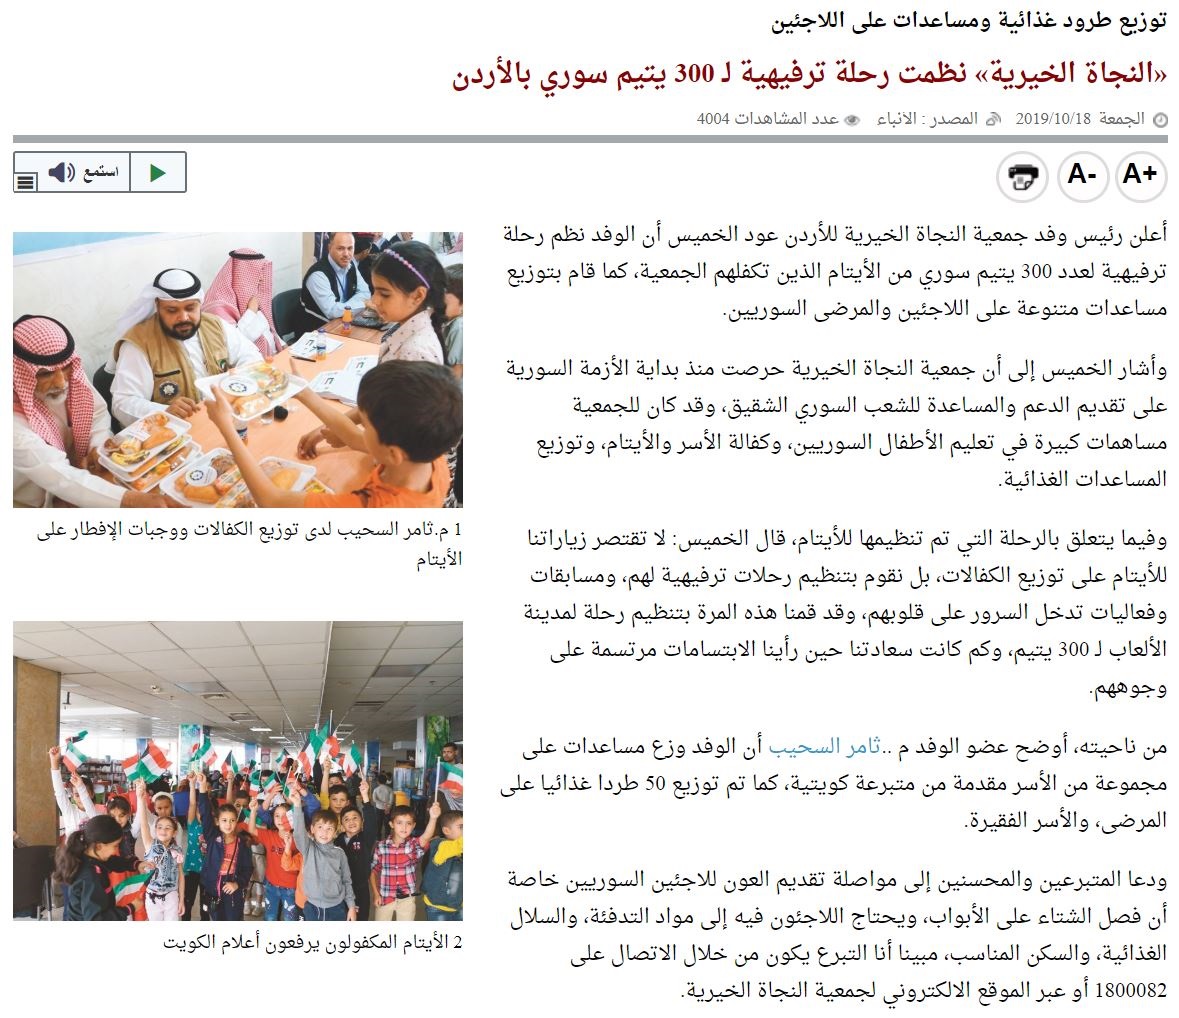 النجاة الخيرية نظمت رحلة ترفيهية لـ 300 يتيم سوري بالأردن